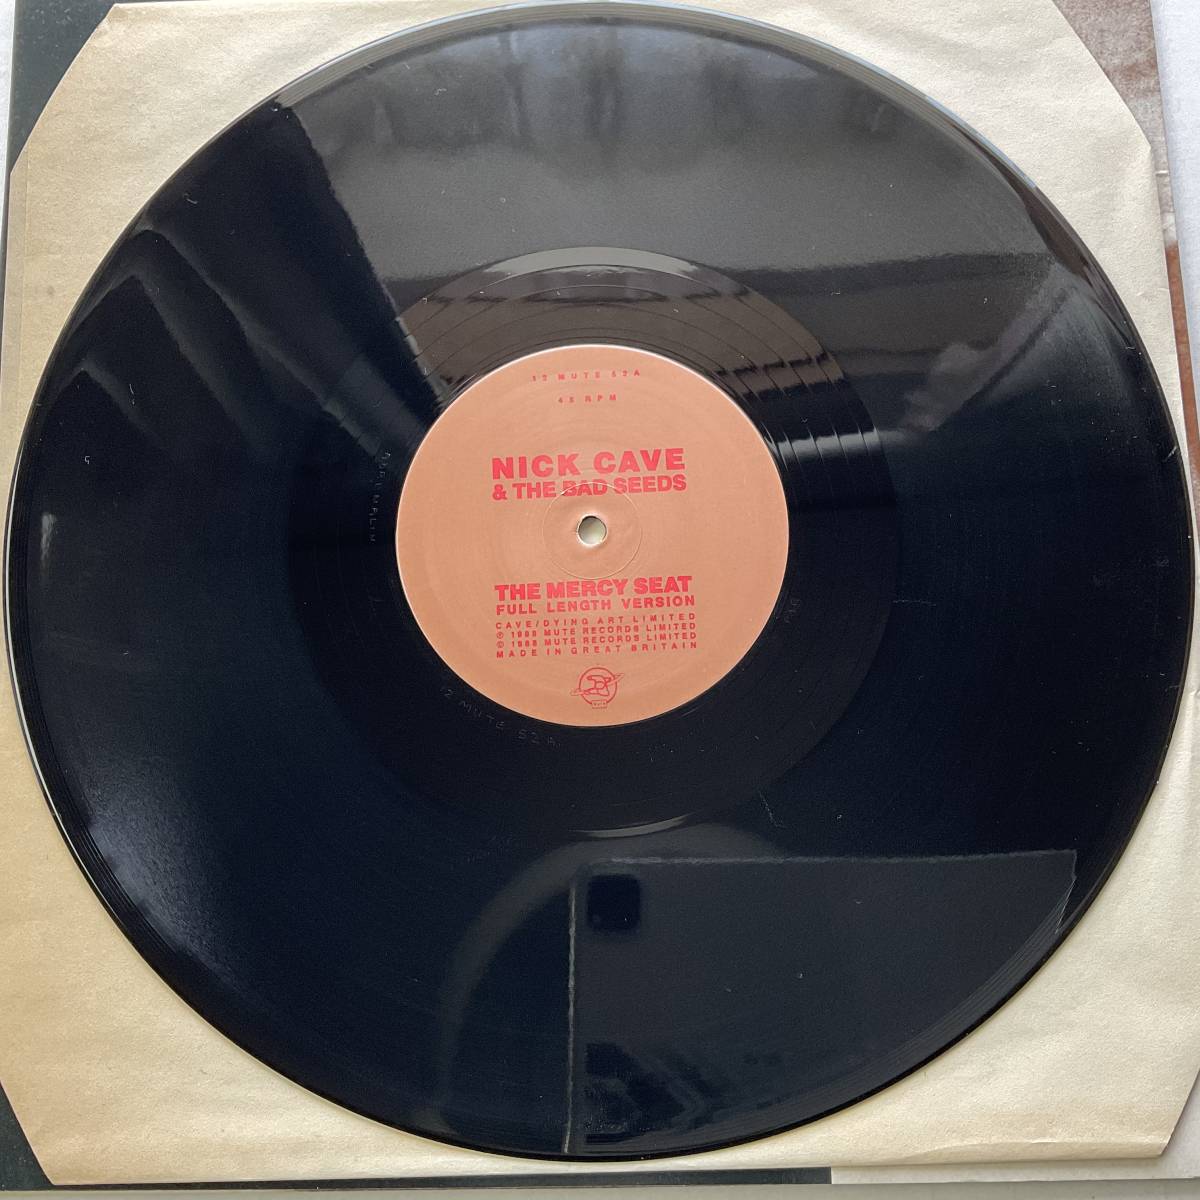 激レア UK 1988 オリジナル NICK CAVE and The BAD SEEDS The Mercy Seat レコード12” Mute 12STUMM52 Blixa Bargeld Made in ENGLAND美盤_画像4